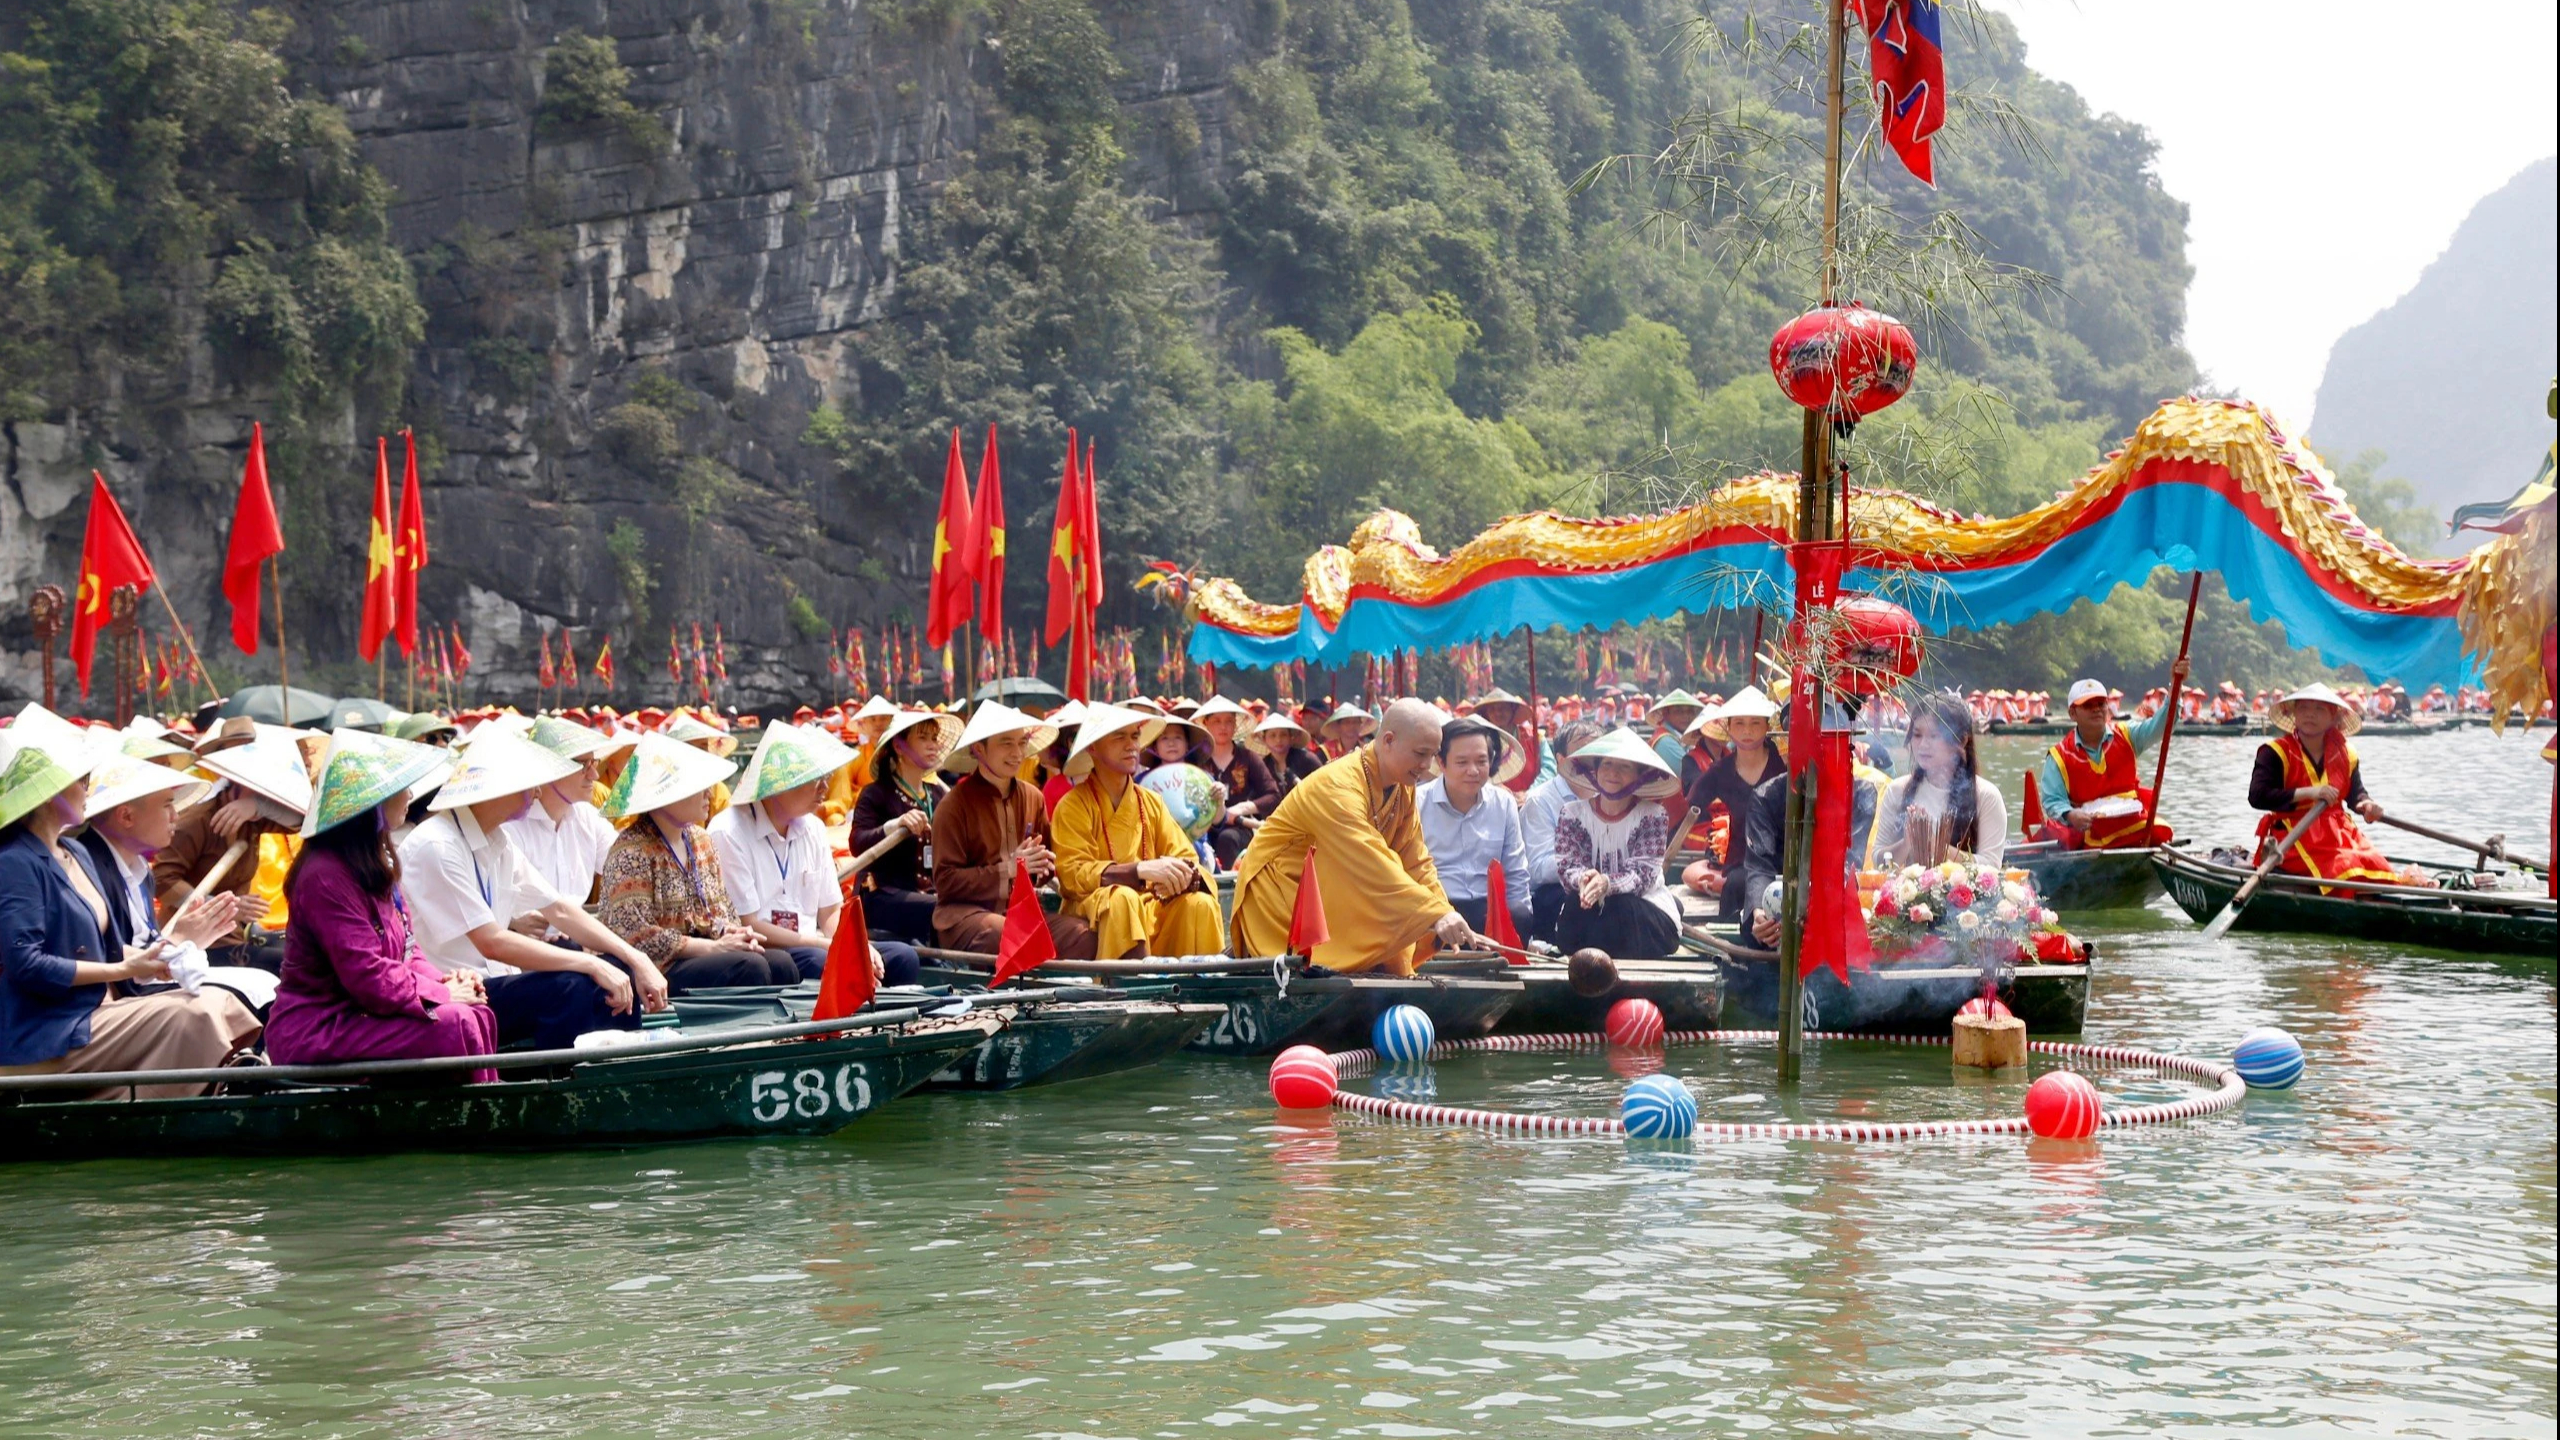 Tham dự lễ hội có lãnh đạo tỉnh Ninh Bình; đại diện Hội đồng Trị sự Giáo hội Phật giáo Việt Nam; bà Simona Mirela Miculescu, Chủ tịch Đại hội đồng UNESCO lần thứ 42; và hàng ngàn du khách, người dân